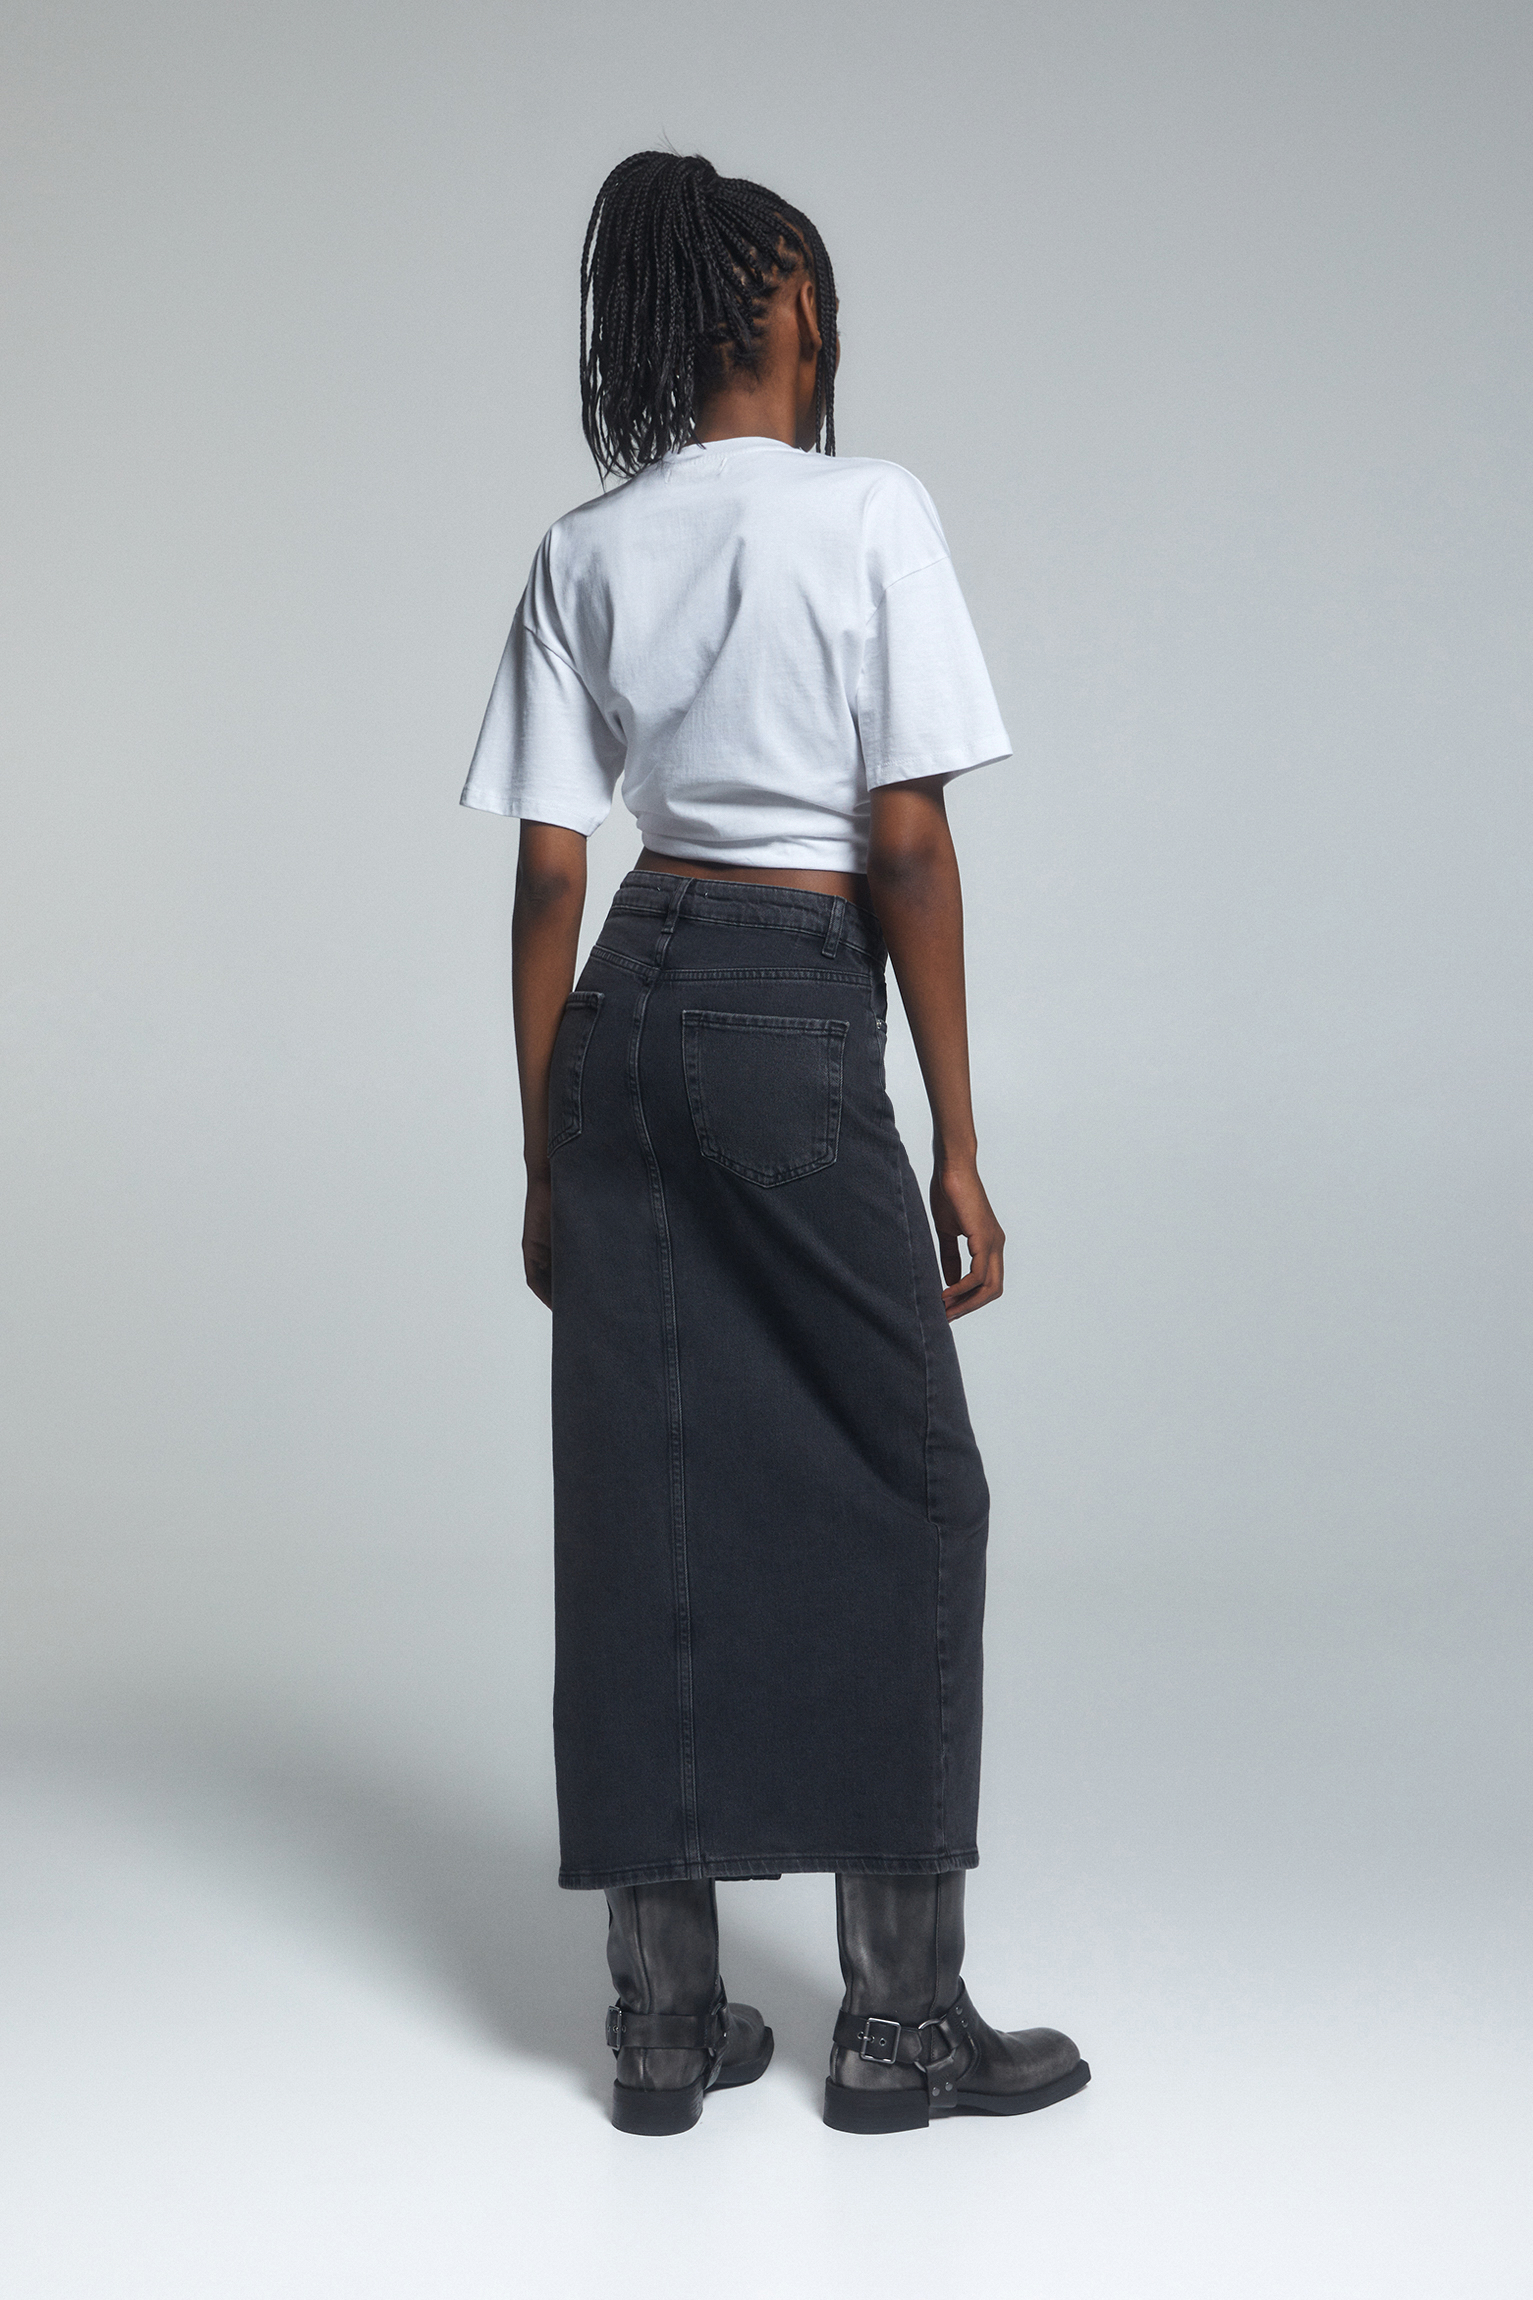 Black Denim Skirt - Women's Fall Styles | ROOLEE